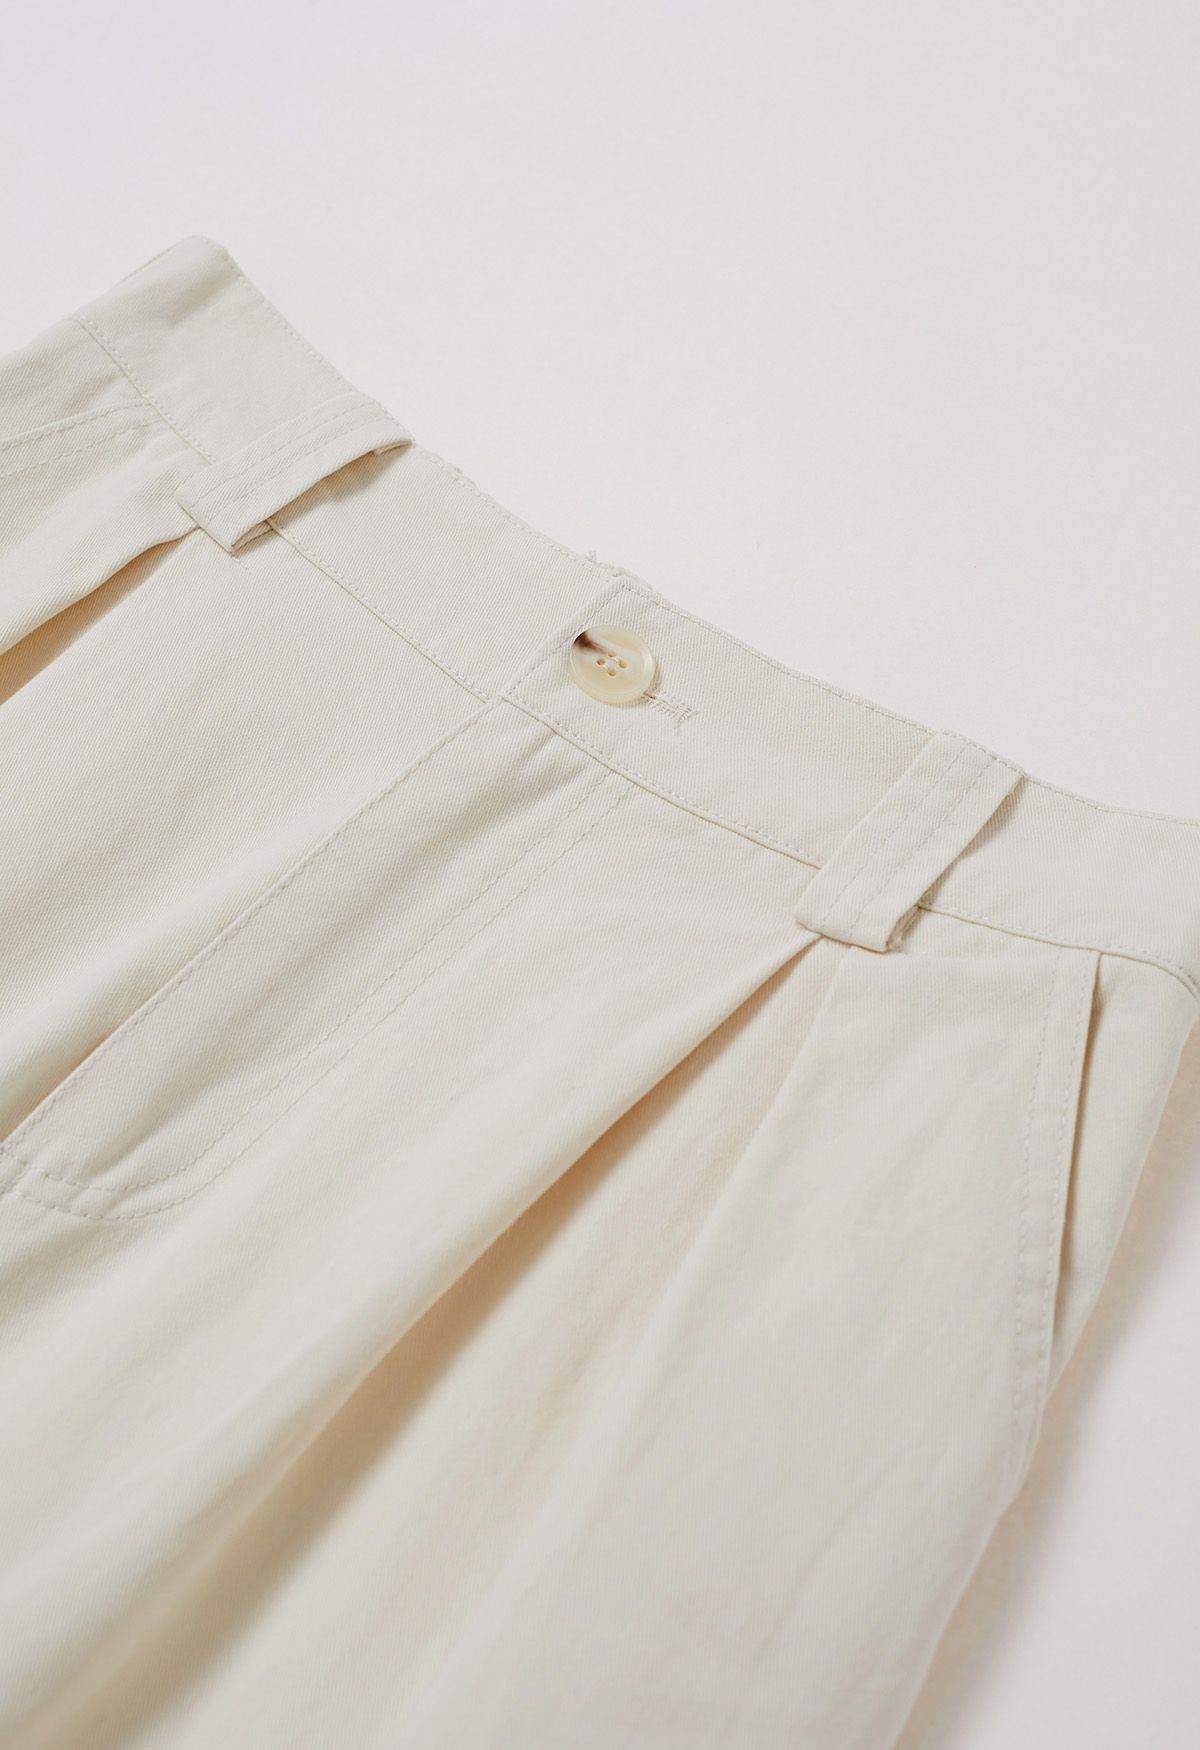 Pantalones anchos de algodón suave en marfil